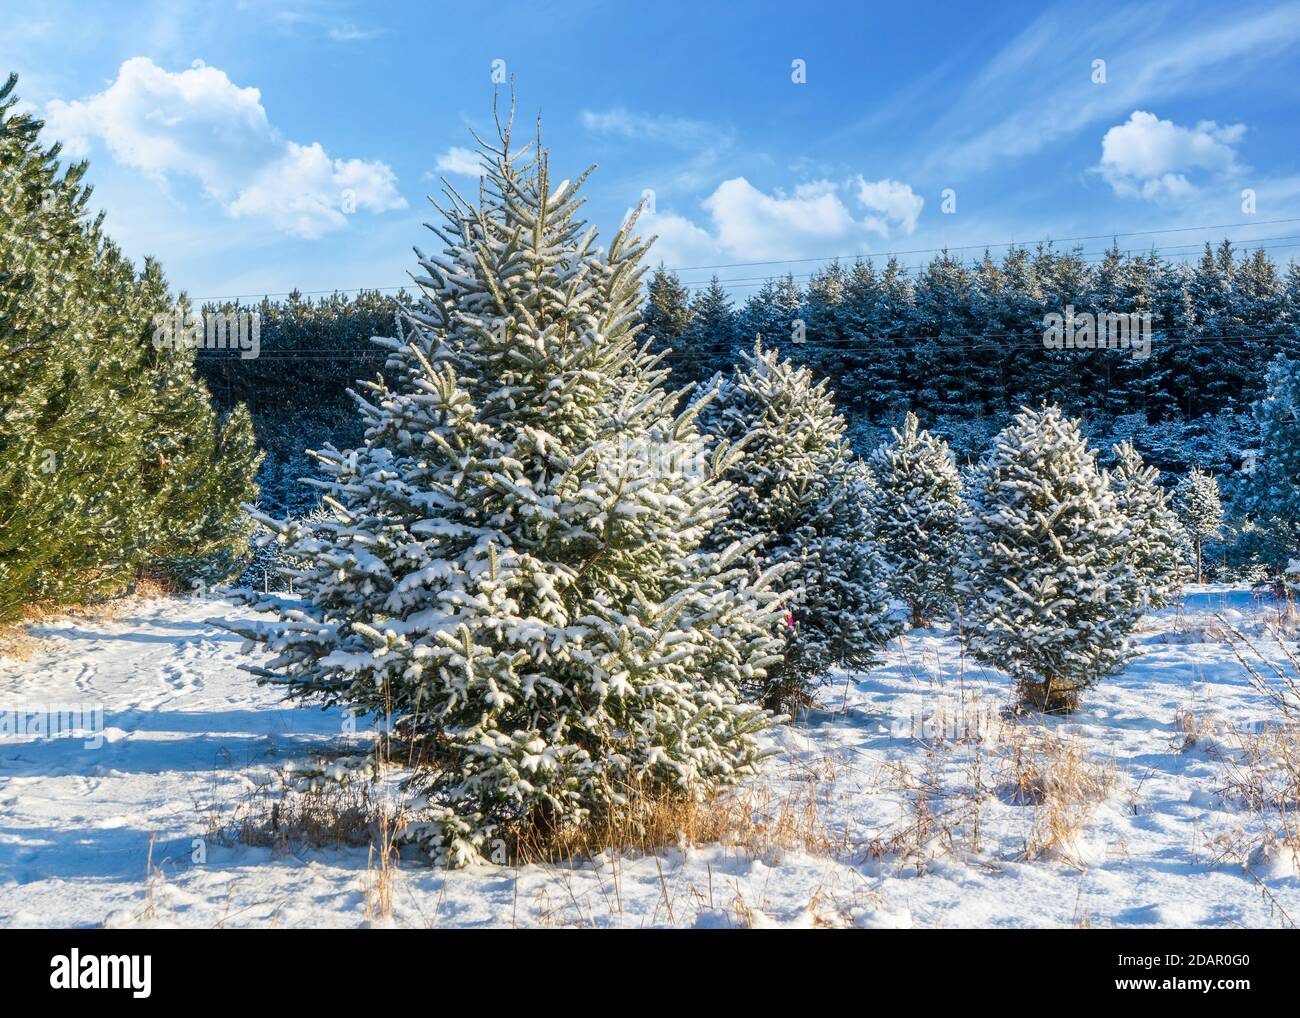 Abeto Balsam en una granja de árboles de Navidad cubierta de una manta de nieve. Foto de stock